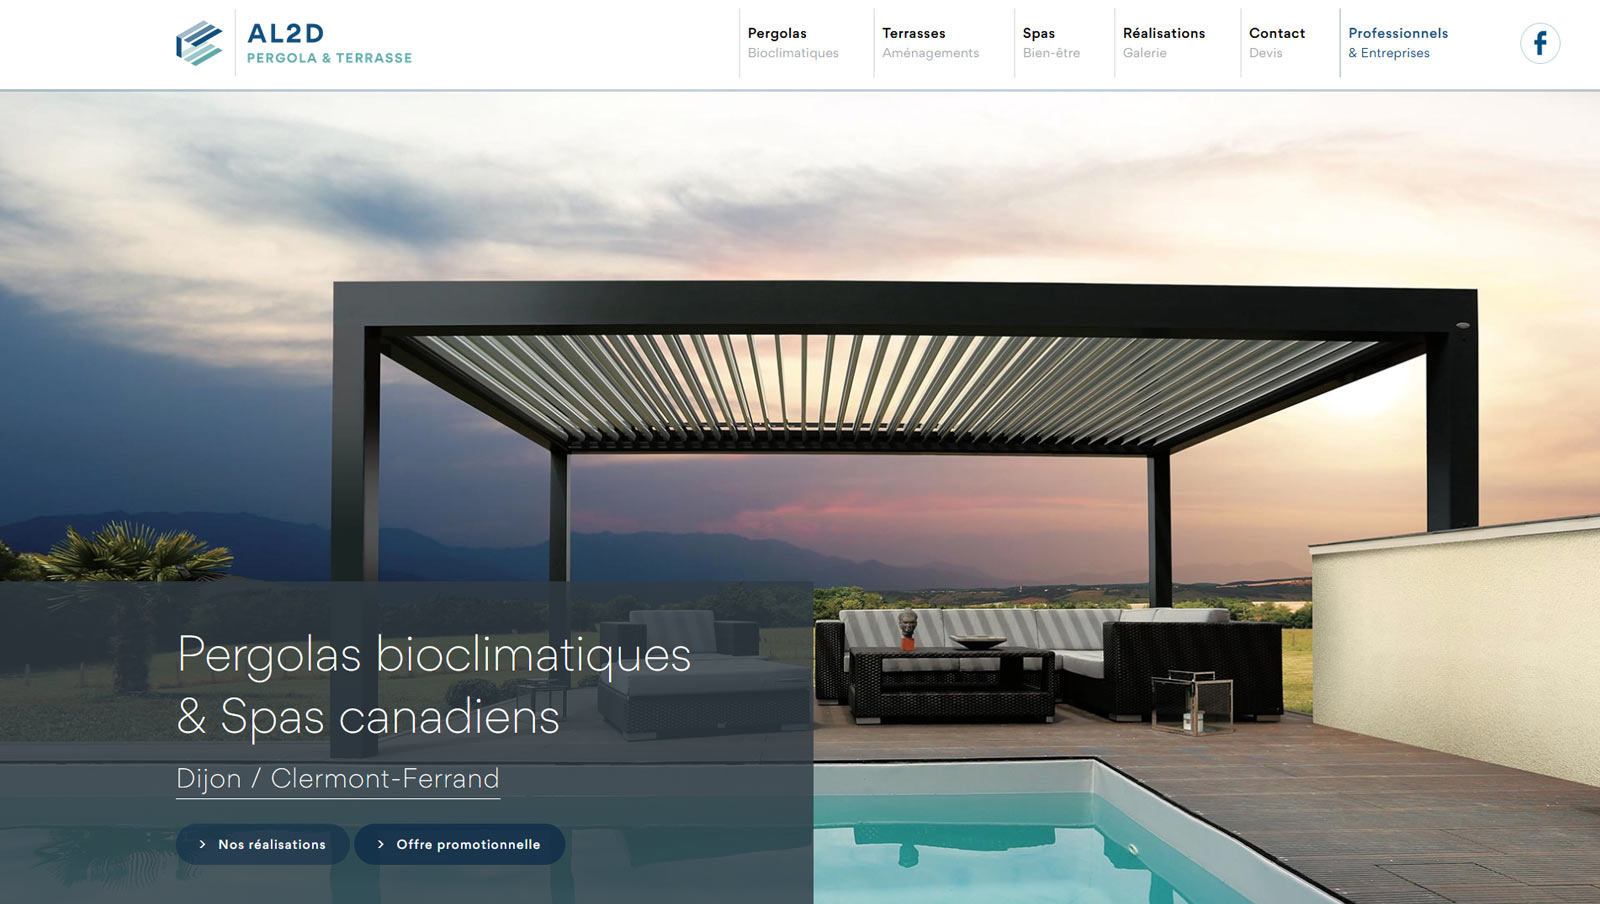 Création site internet vitrine : webdesign et développement pour Pergola et Terrasse, distributeur officiel Biossun par Hervé Augoyat